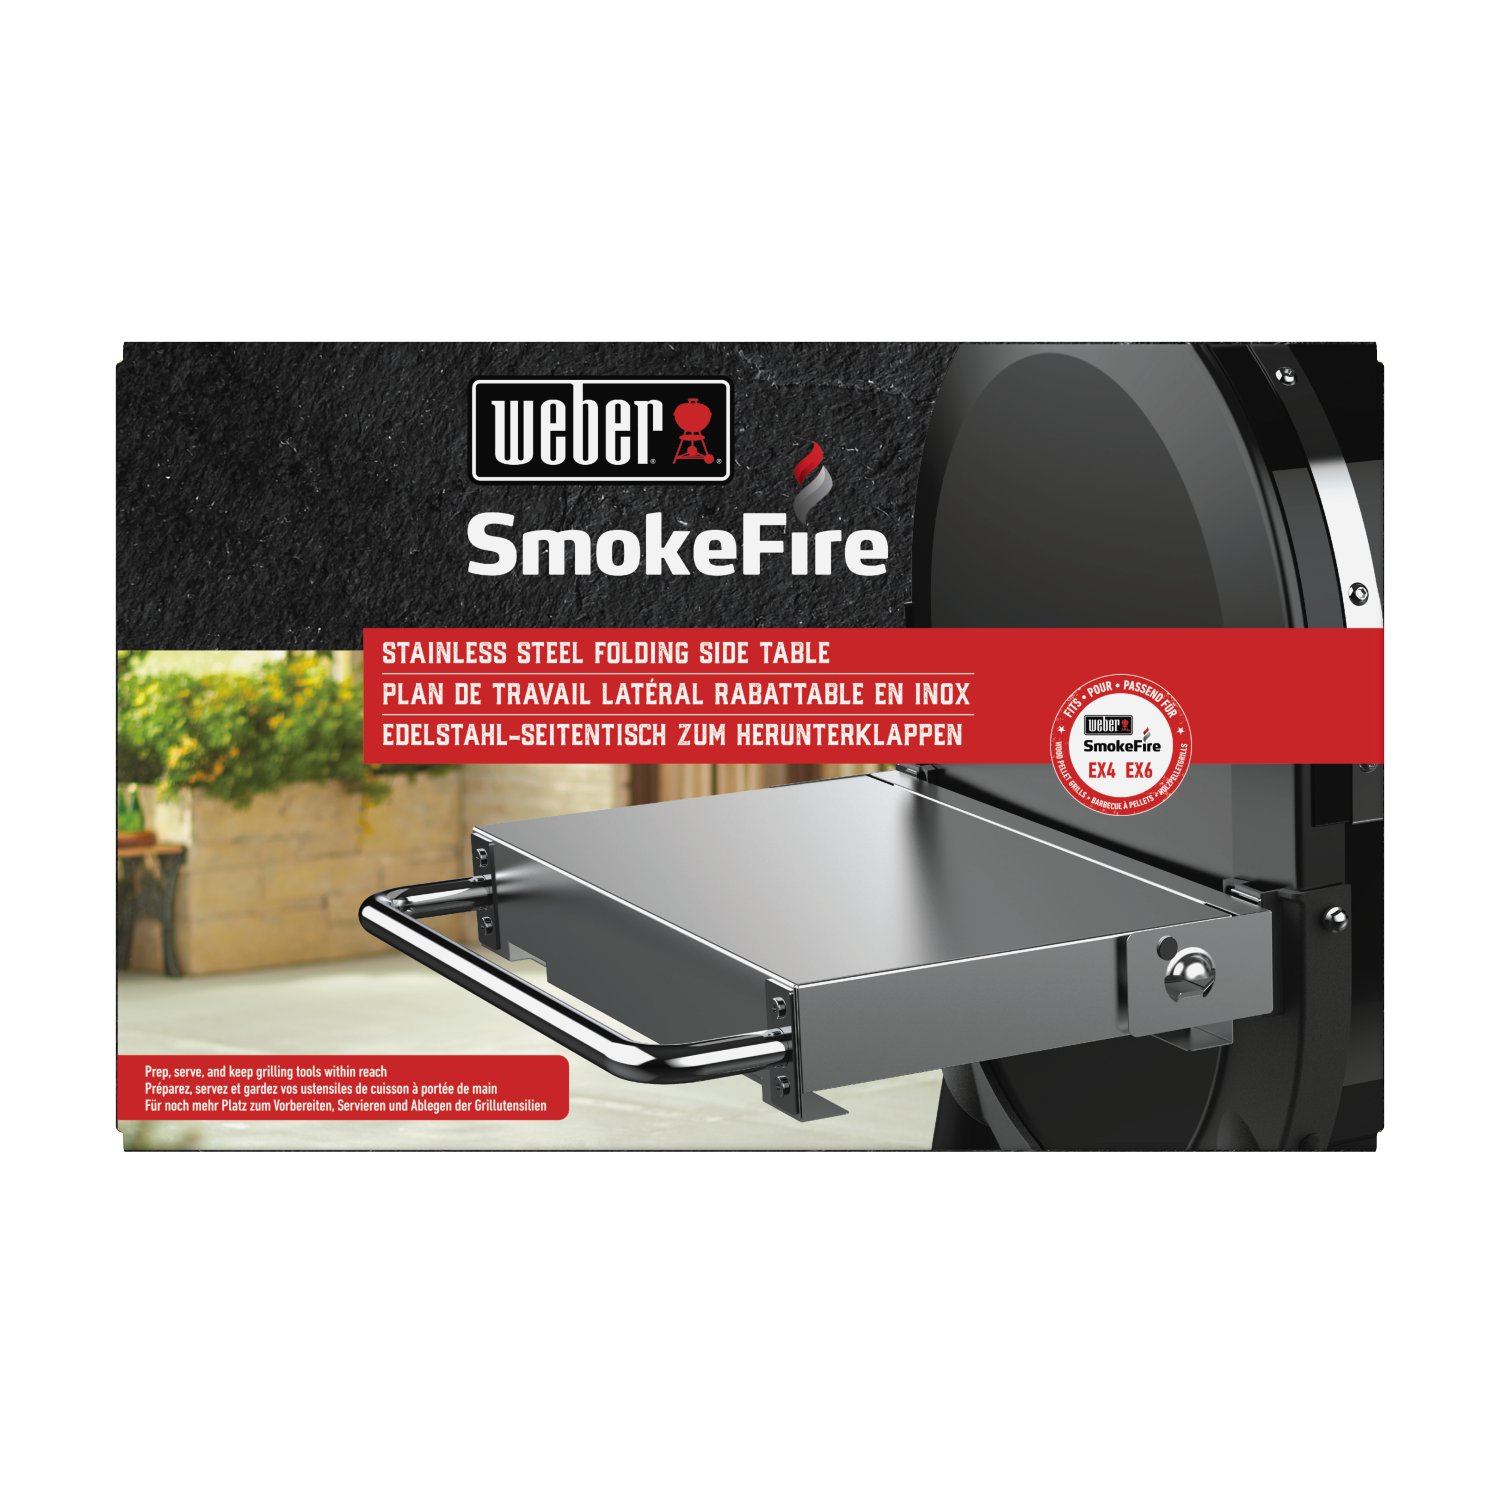 WEBER® Edelstahl-Seitentisch zum Herunterklappen für SmokeFire Holzpelletgrills